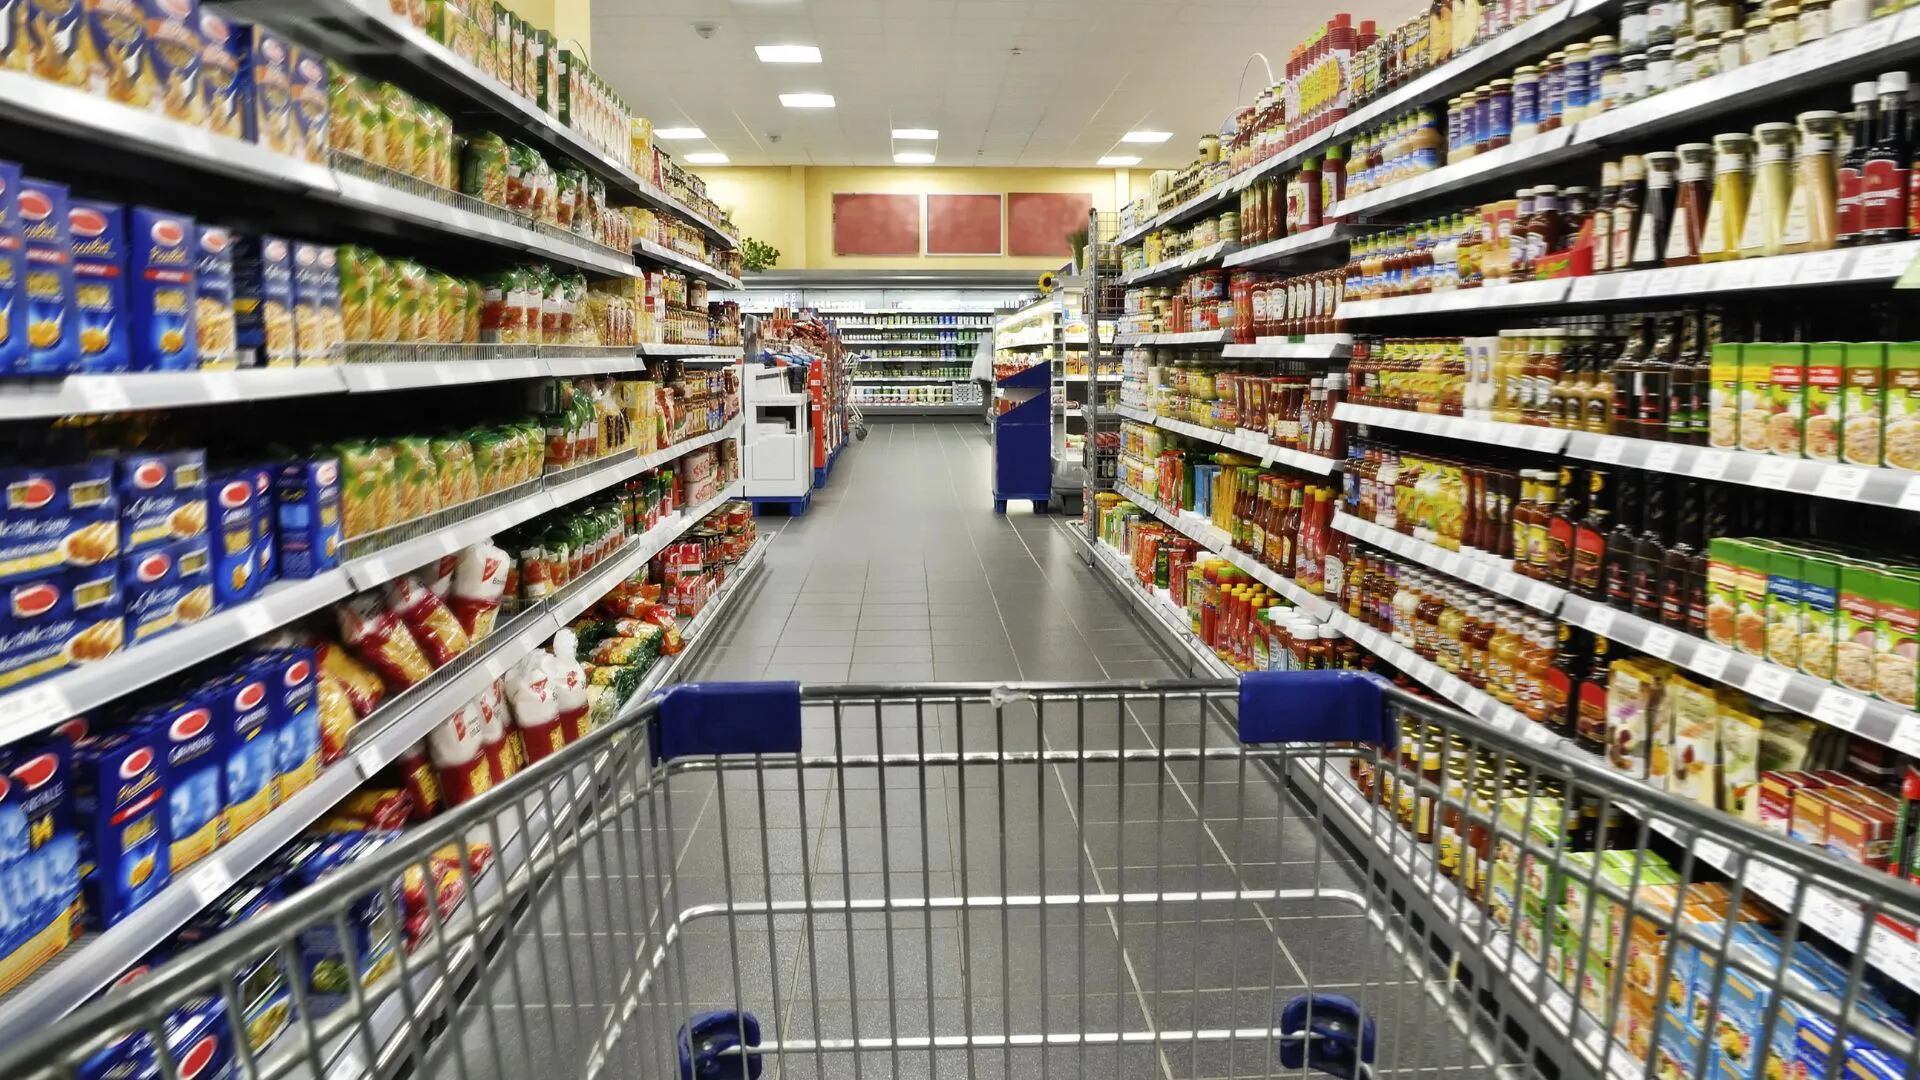 Descuento de $1000 en supermercados: a quiénes alcanza y hasta cuándo se puede conseguir